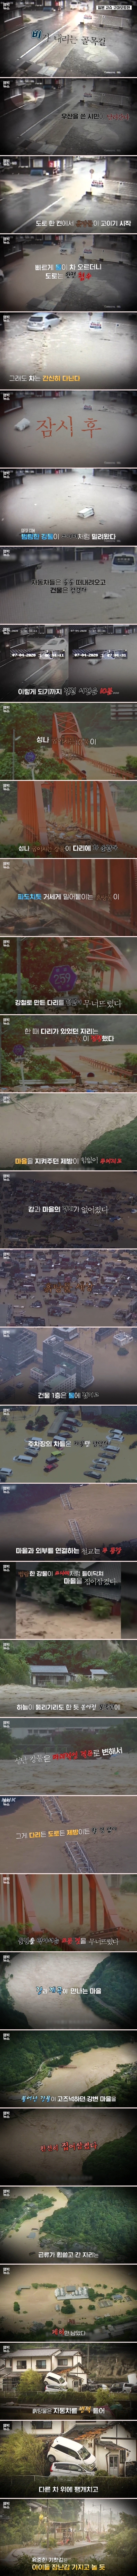 일본을 덮친 폭우의 위력 (1).jpg